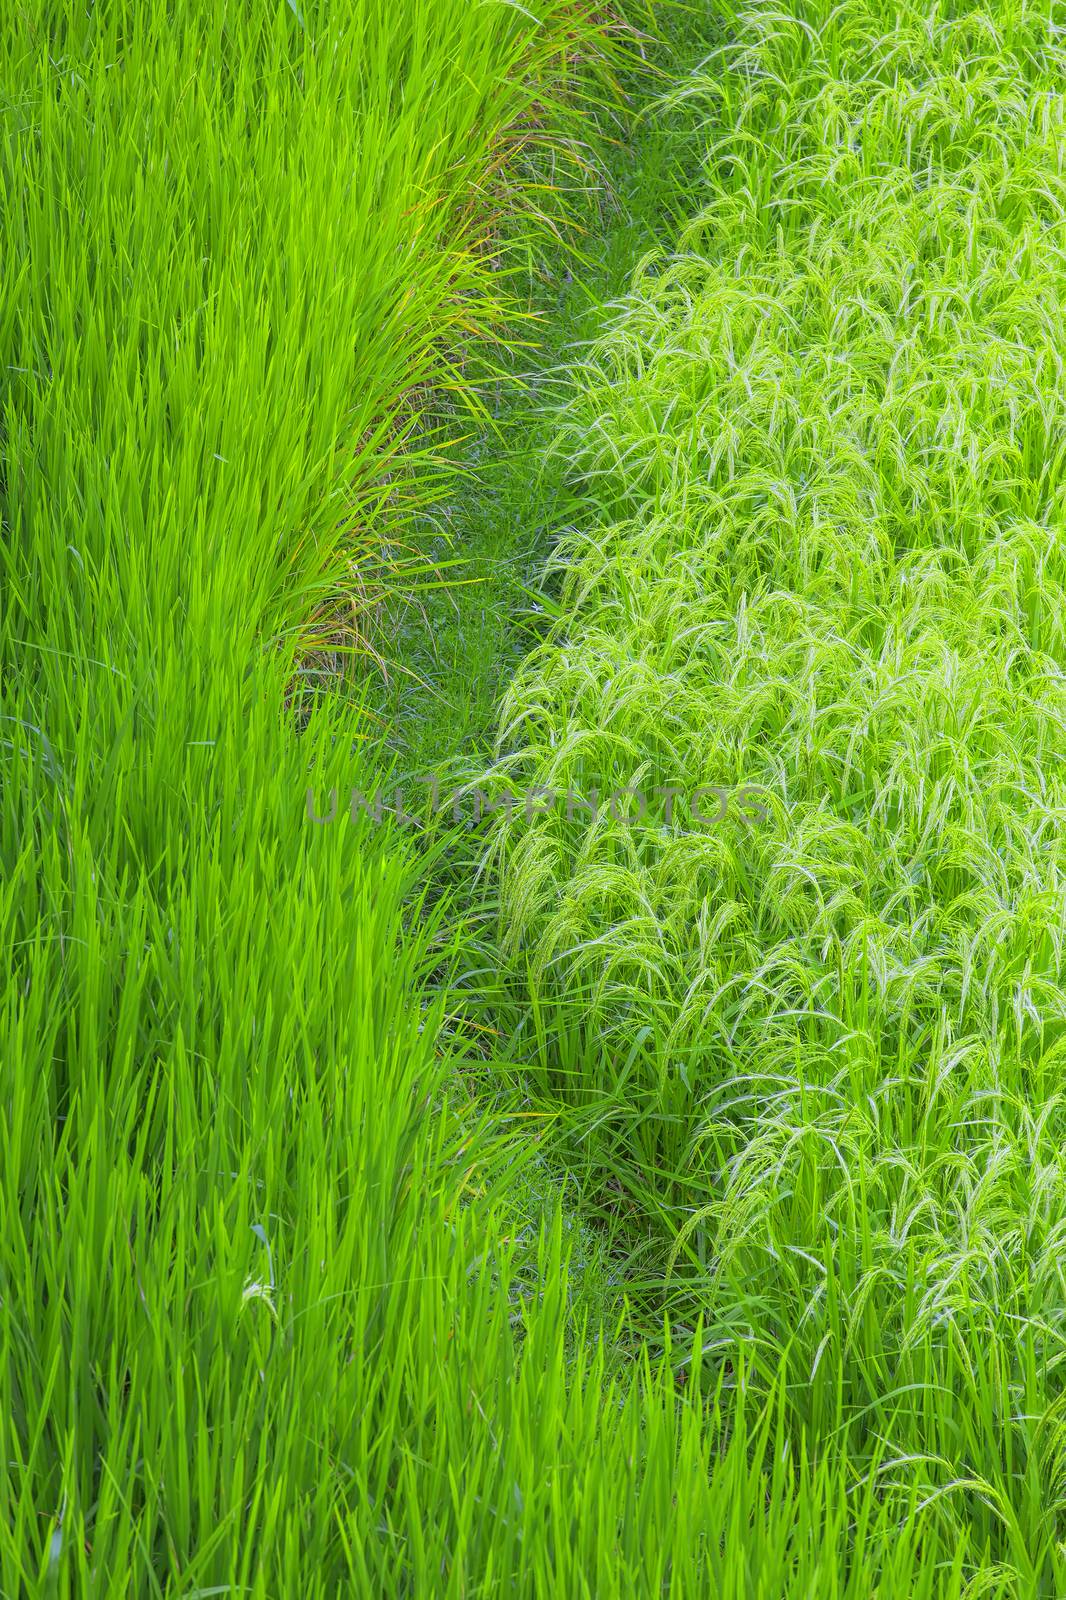 Rice field by kjorgen